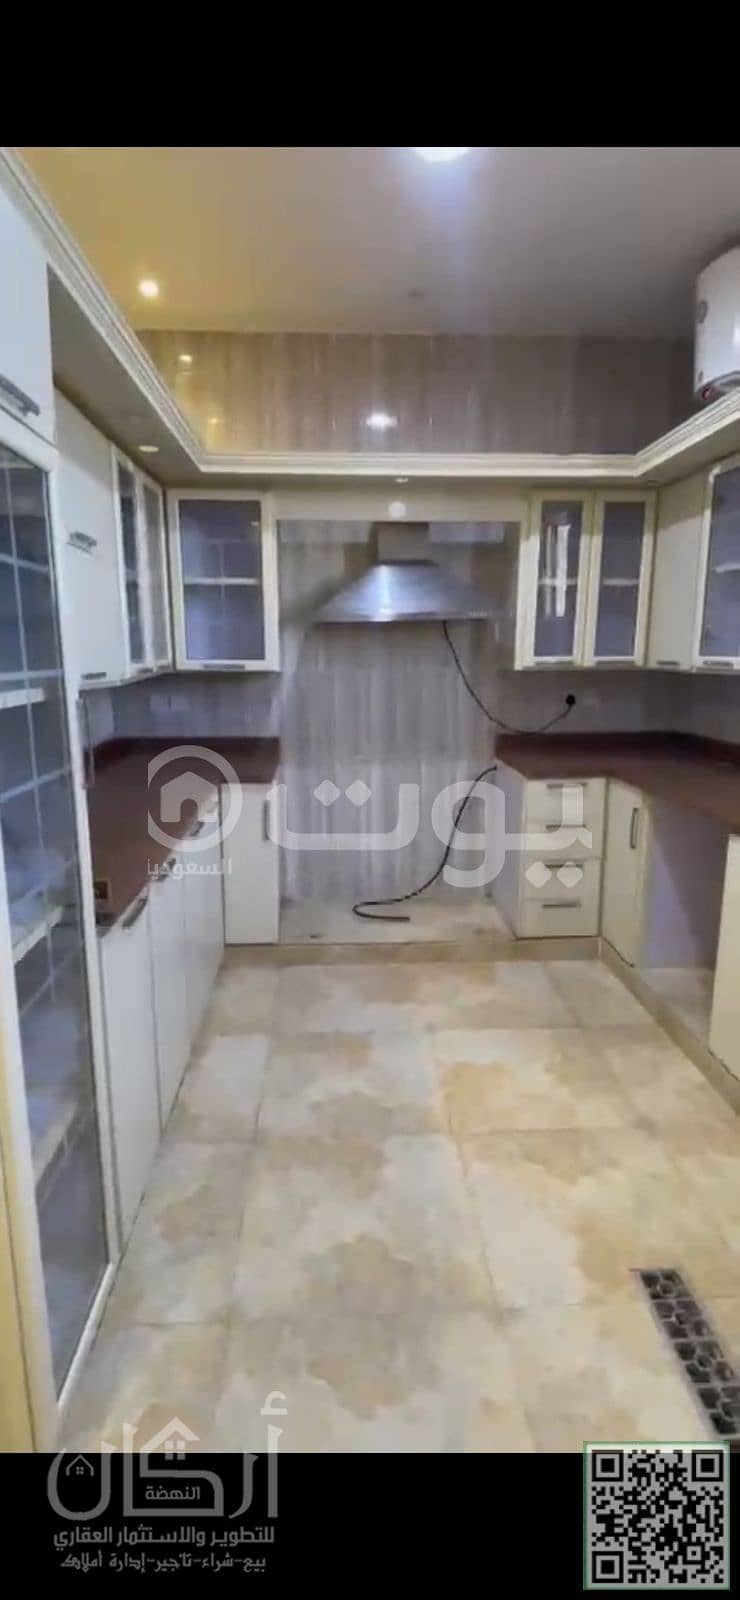 شقة للإيجار بحي العارض، شمال الرياض | إعلان رقم 3416